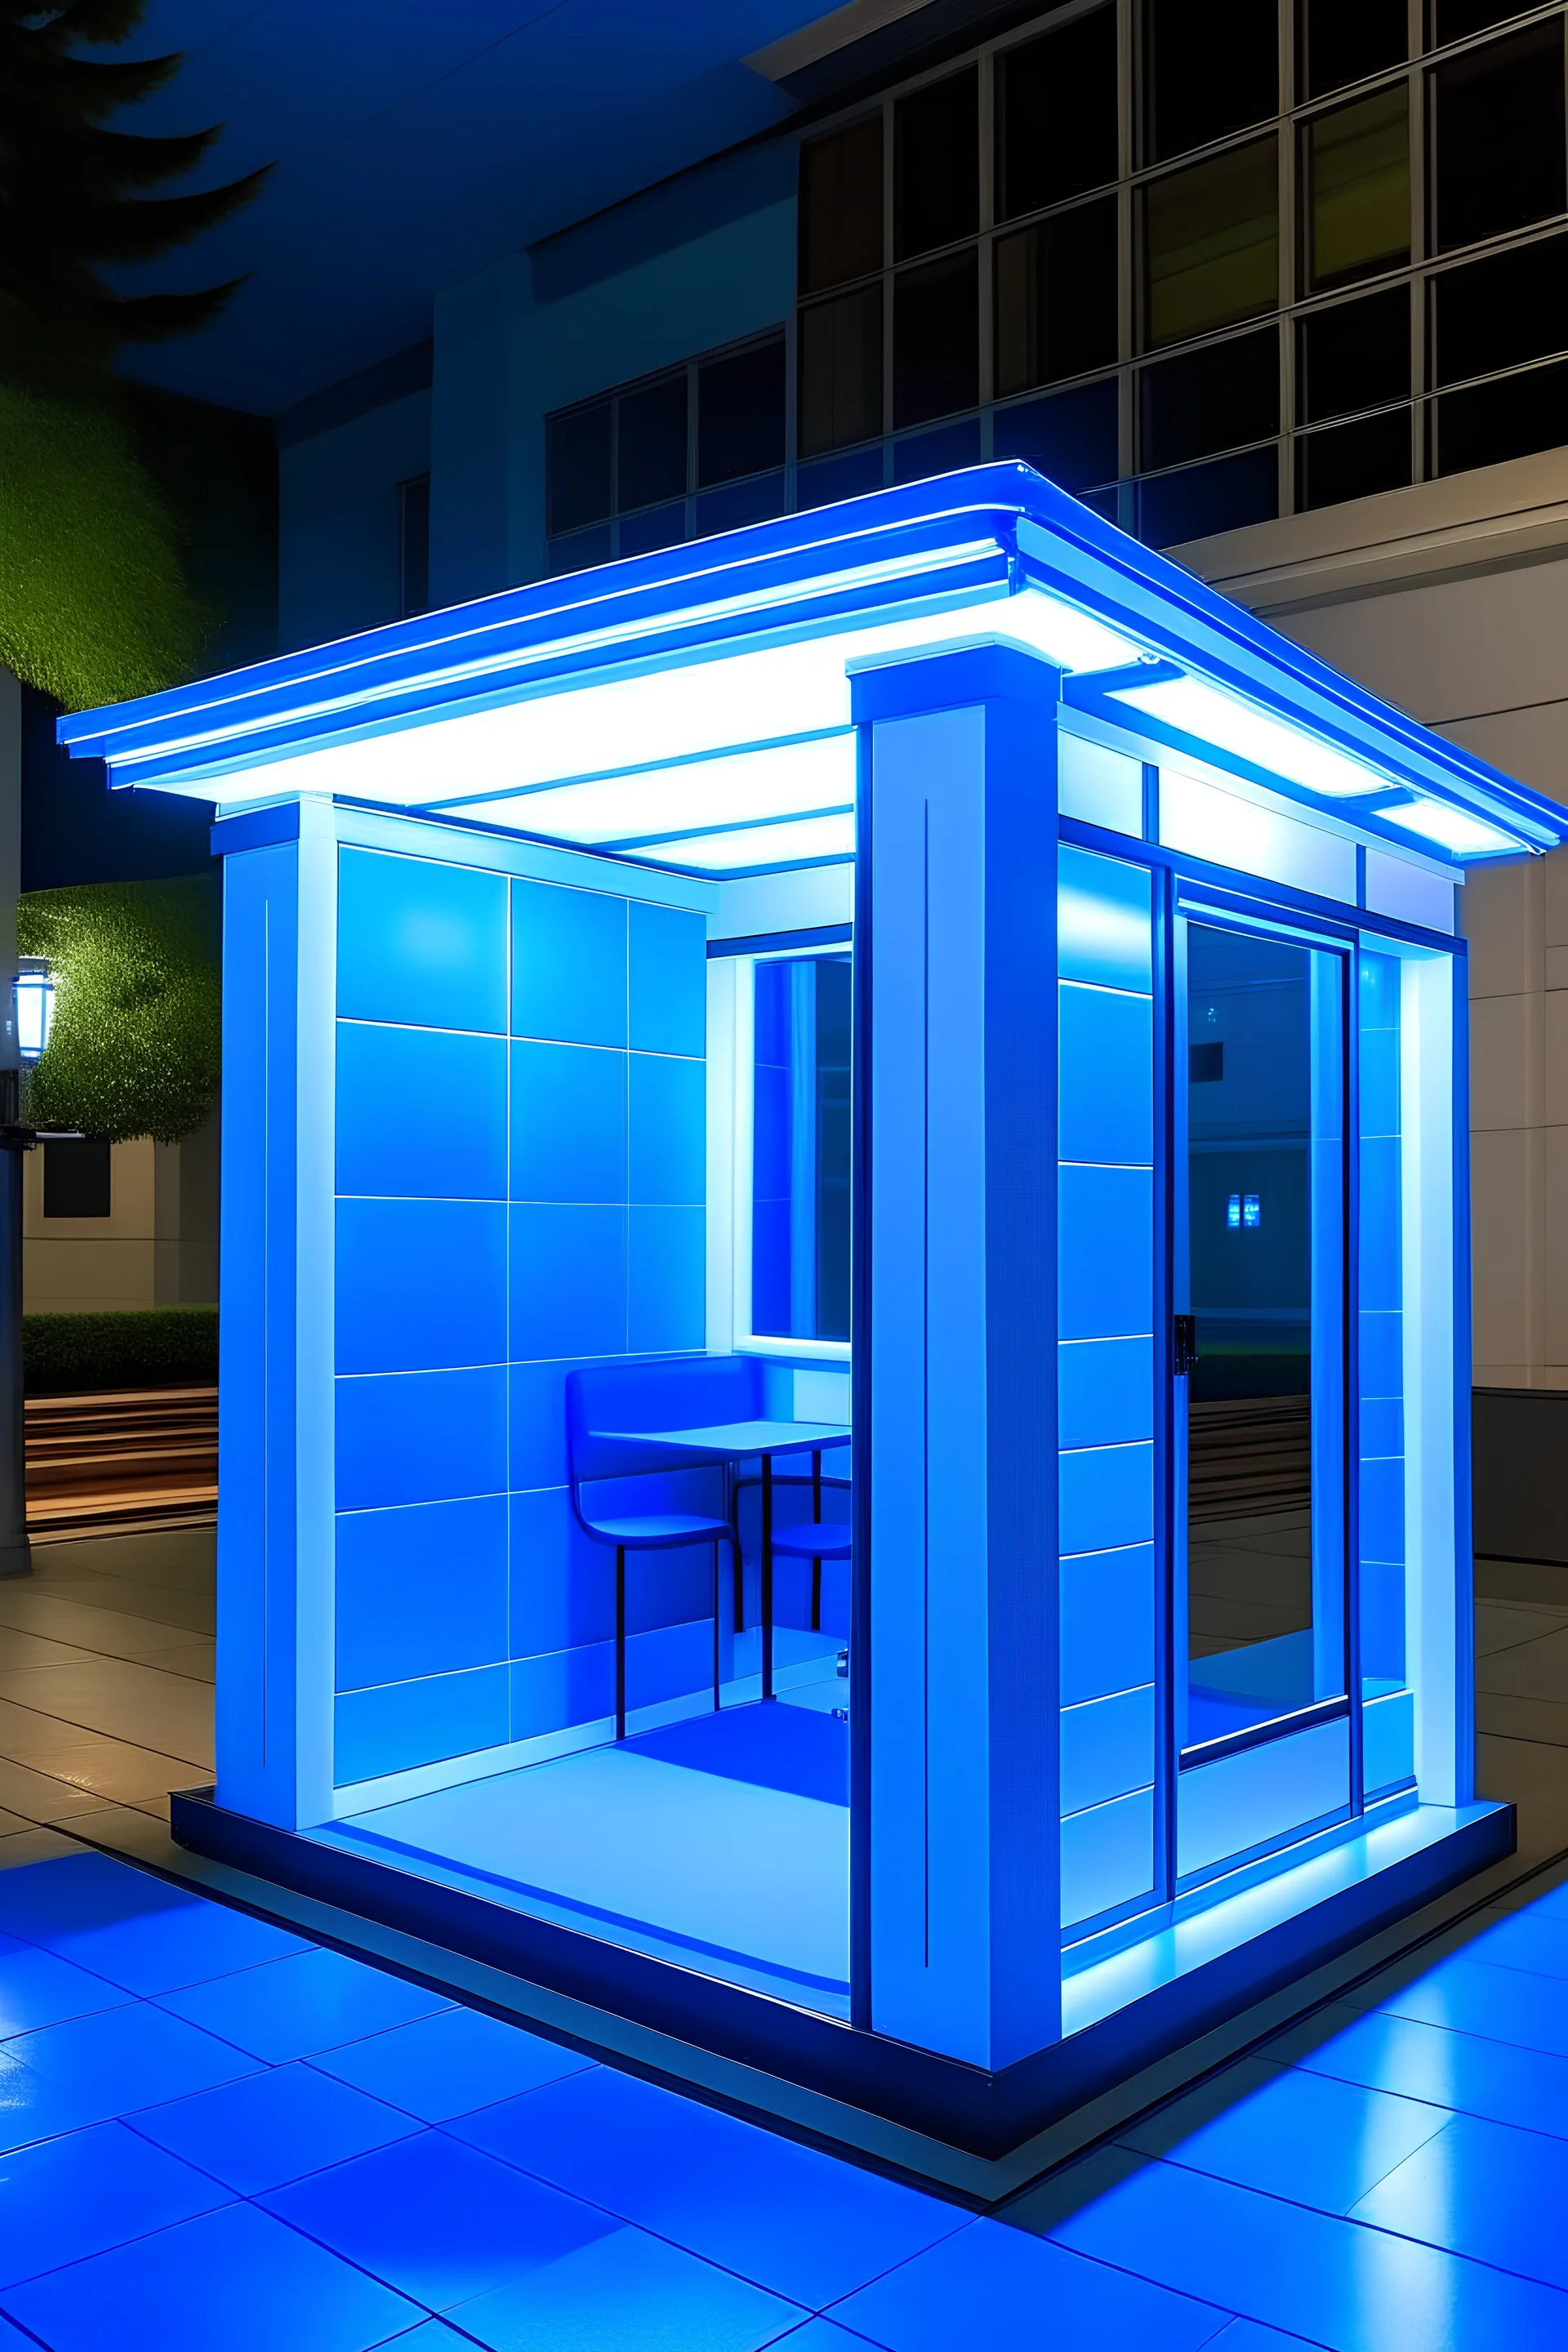 crea una vista por dentro de una cabina portátil cuadrada pequeña dentro de una universidad de color blanca con ventanas transparentes y luces led de color azules en el techo que ambienten la cabina, y allá una cámara de seguridad dentro de la cabina